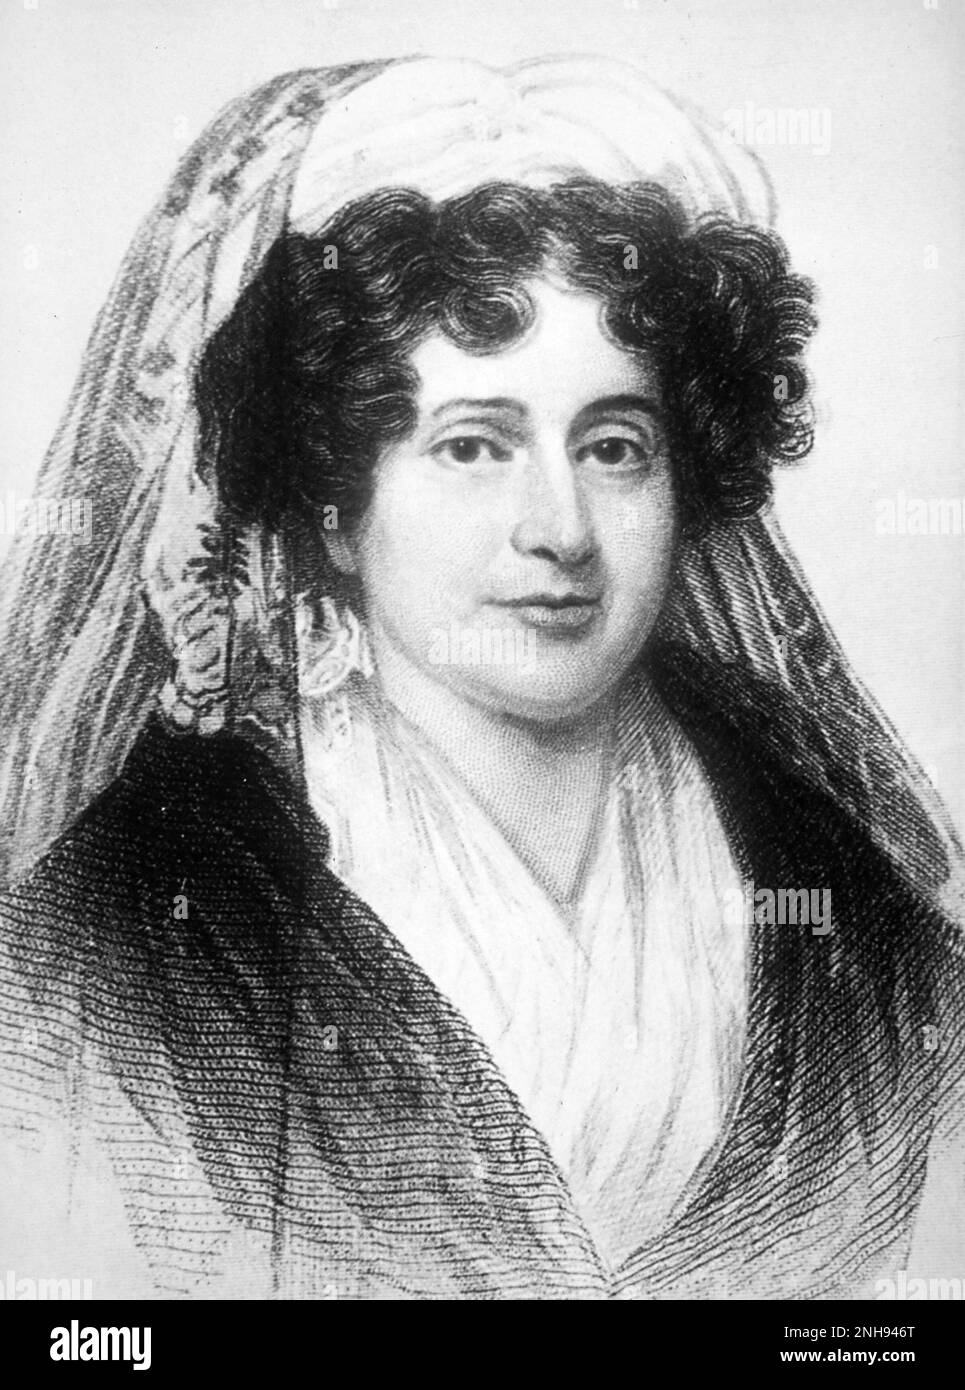 Emma Hart Willard (1787-1870) fue una activista estadounidense de educación femenina que fundó la primera escuela para la educación superior de las mujeres, el Seminario Femenino Troy en Troy, Nueva York. Con el éxito de su escuela, Willard pudo viajar por todo el país y el extranjero, para promover la educación para las mujeres. Retrato circa 1805-1815./n/n Foto de stock